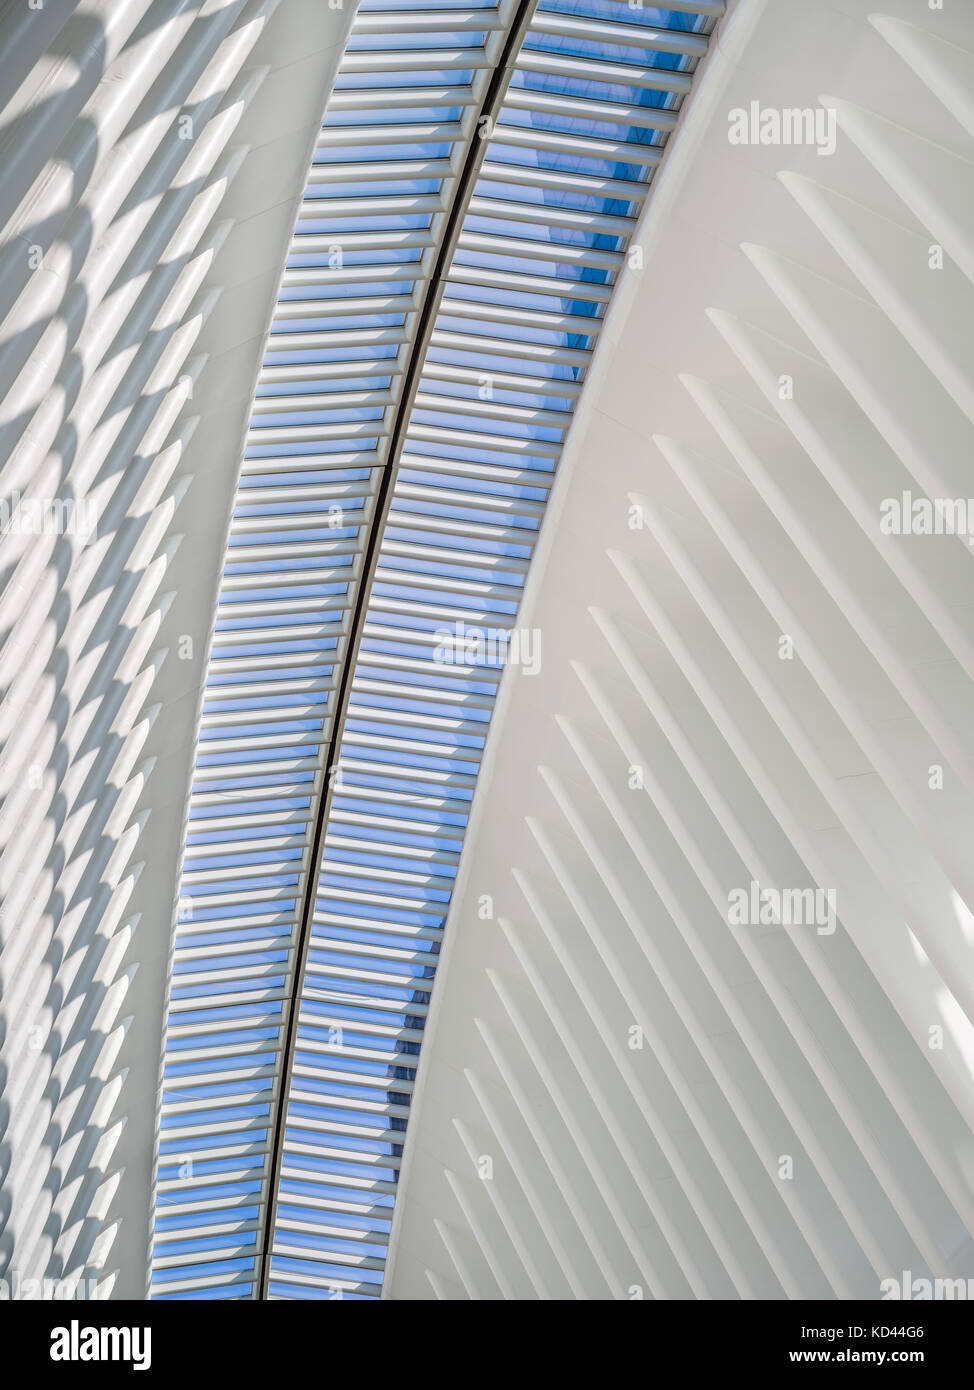 Vue de l'intérieur de l'Oculus, Westfield World Trade Center. Moyeu de Tranportation conçue par Santiago Calatrava. Le Quartier Financier de Manhattan, New York : Banque D'Images